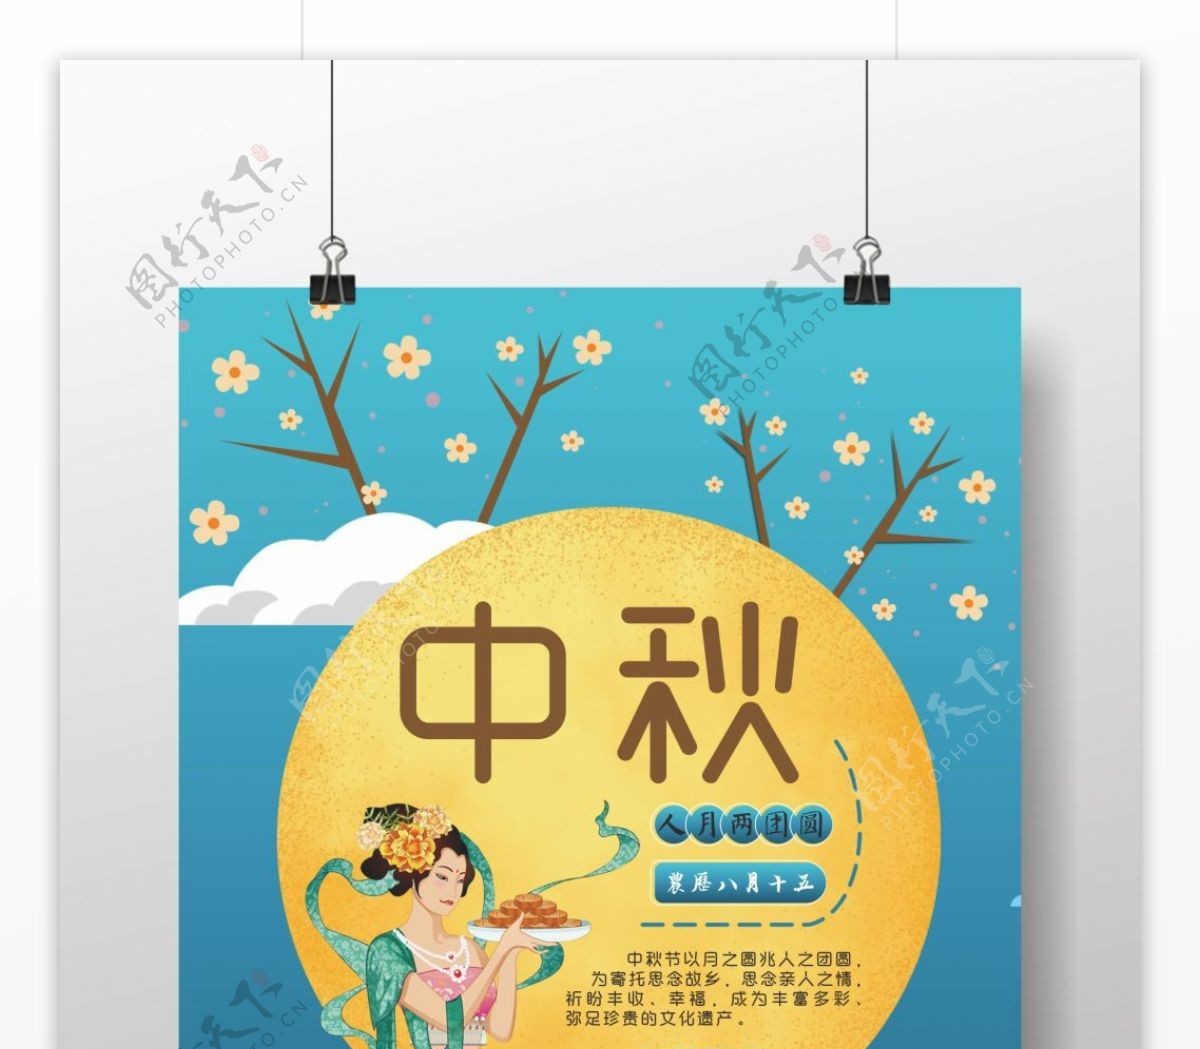 传统中秋节日宣传海报